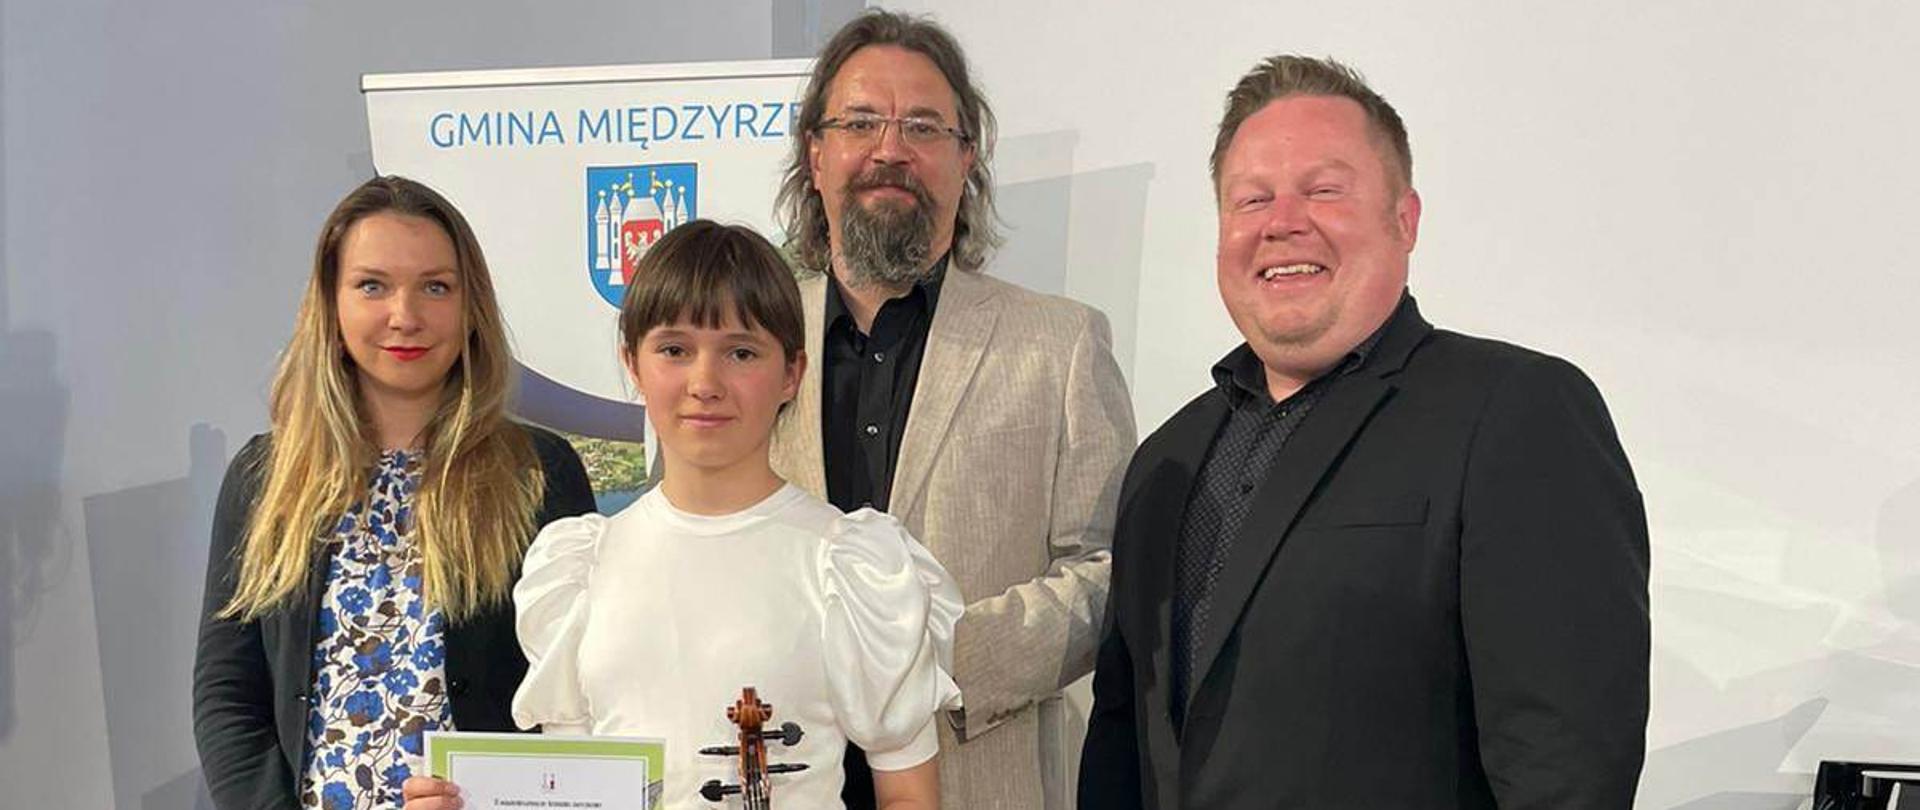 Uczennica Aleksandra Rytlewska stoi z dyplomem i skrzypcami wraz z jurorami konkursu smyczkowego